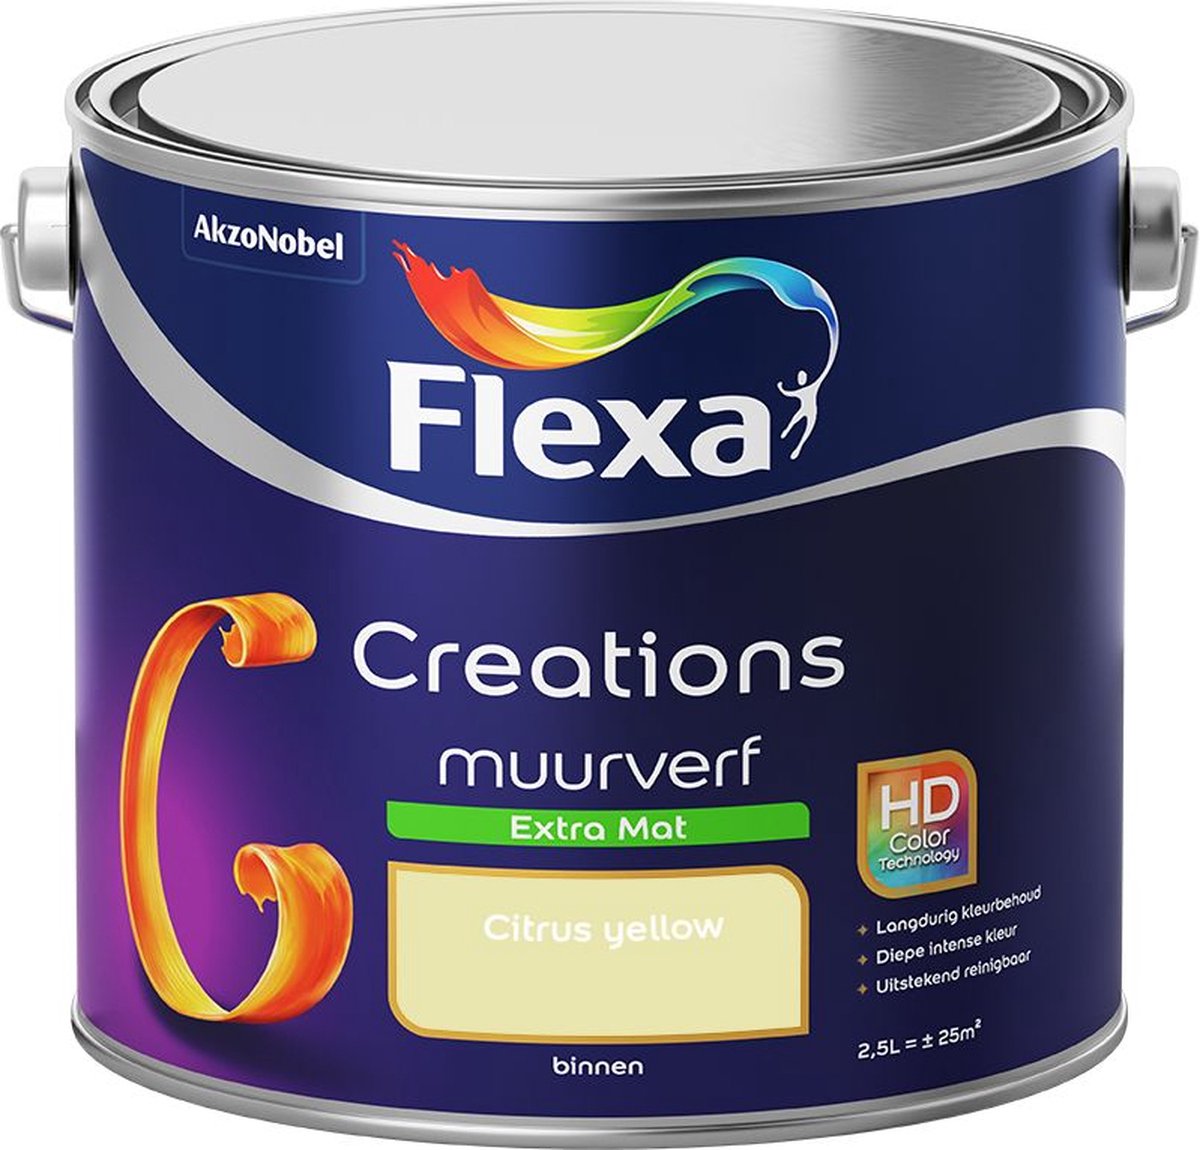 Flexa | Creations Muurverf Extra Mat | Citrus yellow - Kleur van het jaar 2011 | 2.5L